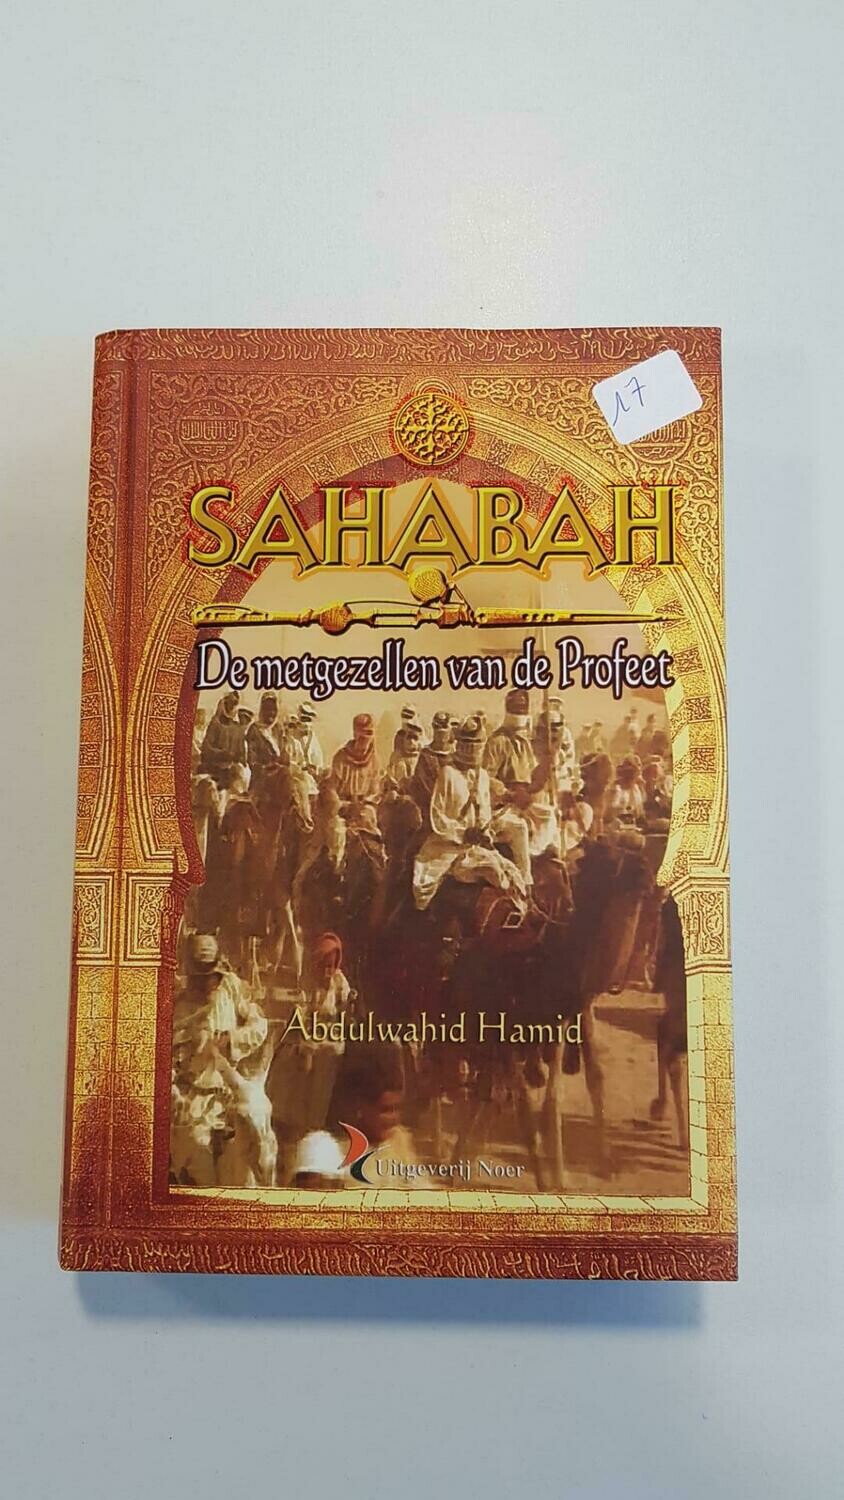 Sahabah, de metgezellen van de profeet